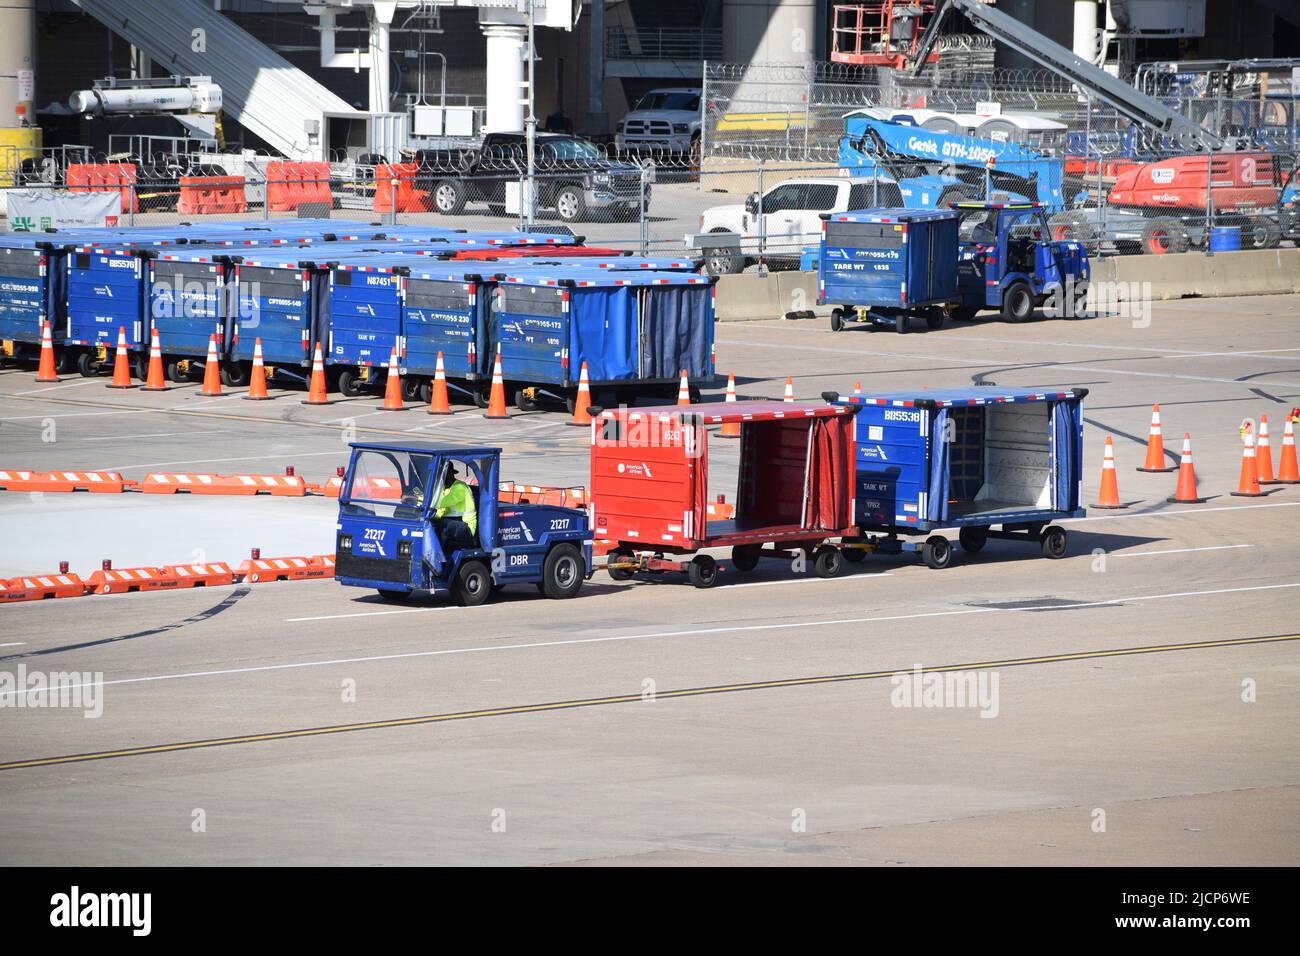 Ein Mitarbeiter der Rampendienste von American Airlines, der einen Traktor fährt, der Gepäckwagen vor Terminal C am Flughafen DFW (Dallas-Fort Worth Airport) zieht Stockfoto